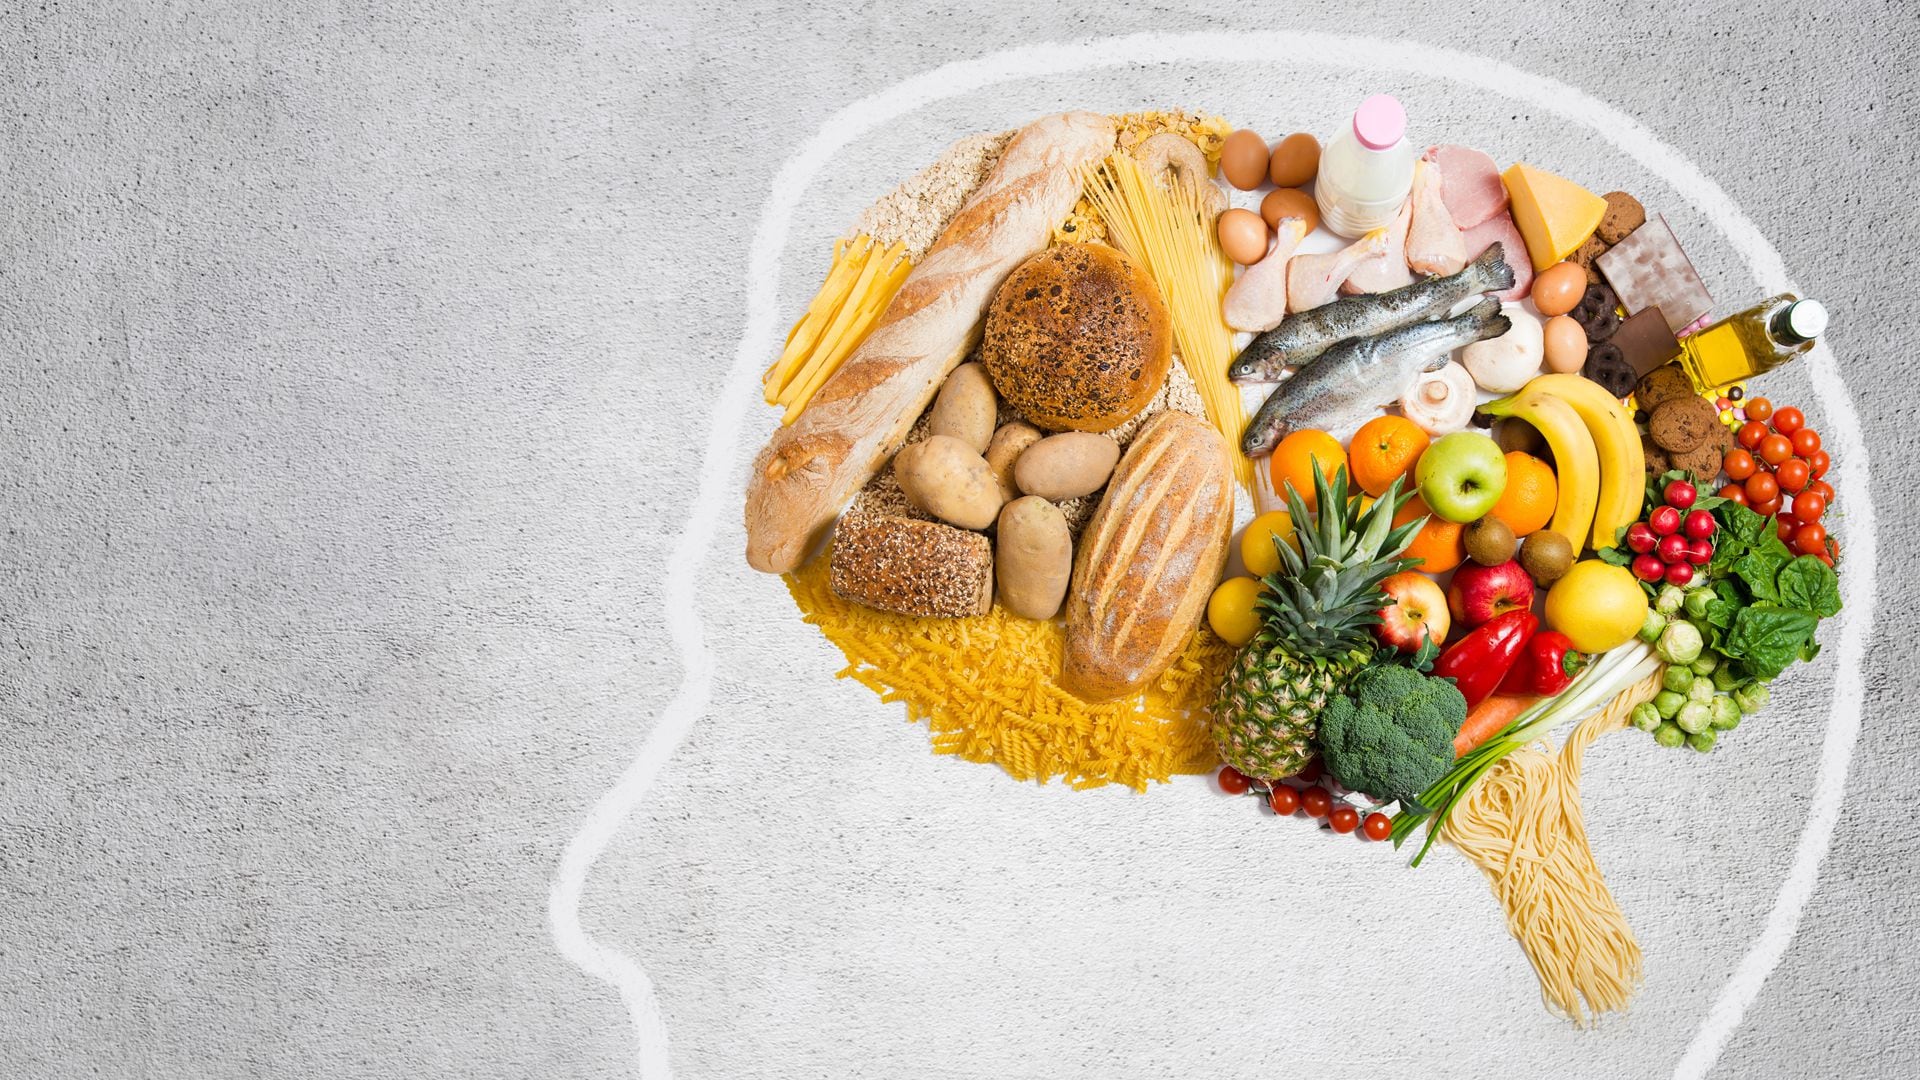 Alimentos ricos en antioxidantes, como frutas y verduras, y ácidos grasos omega 3 son recomendados para prevenir la demencia (Getty)